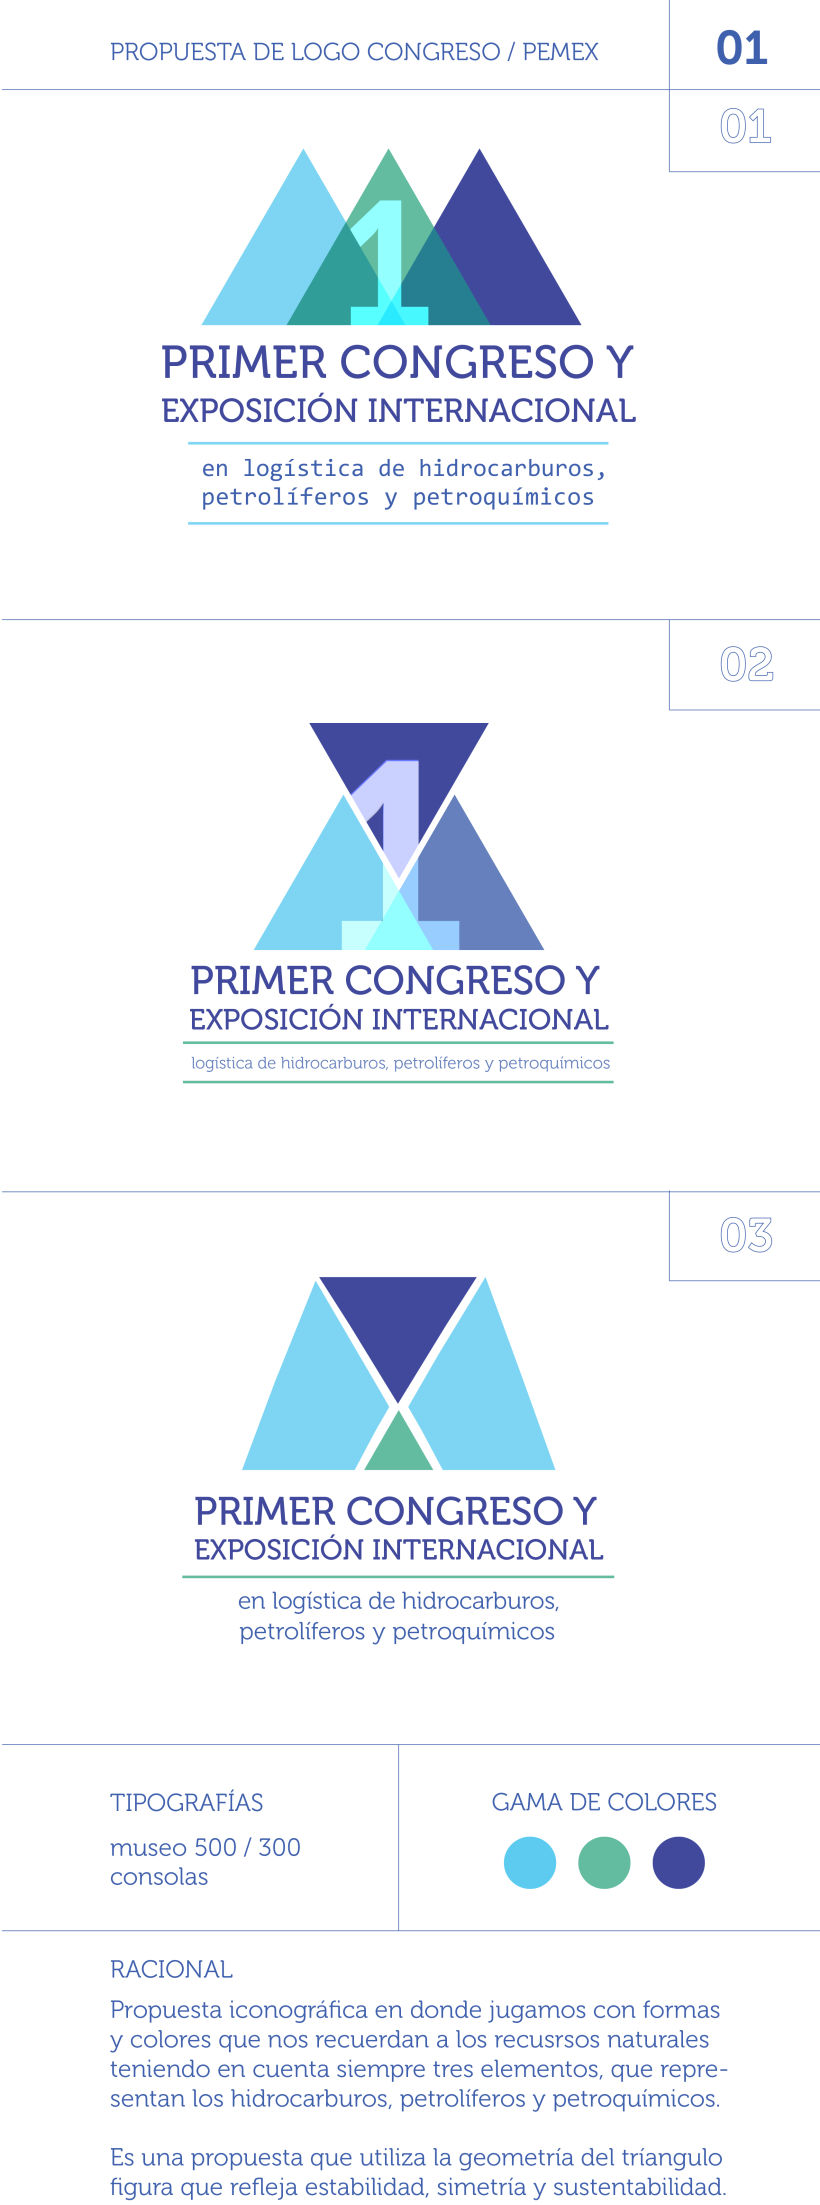 PRIMER CONGRESO Y EXPO INTERNACIONAL PEMEX -1